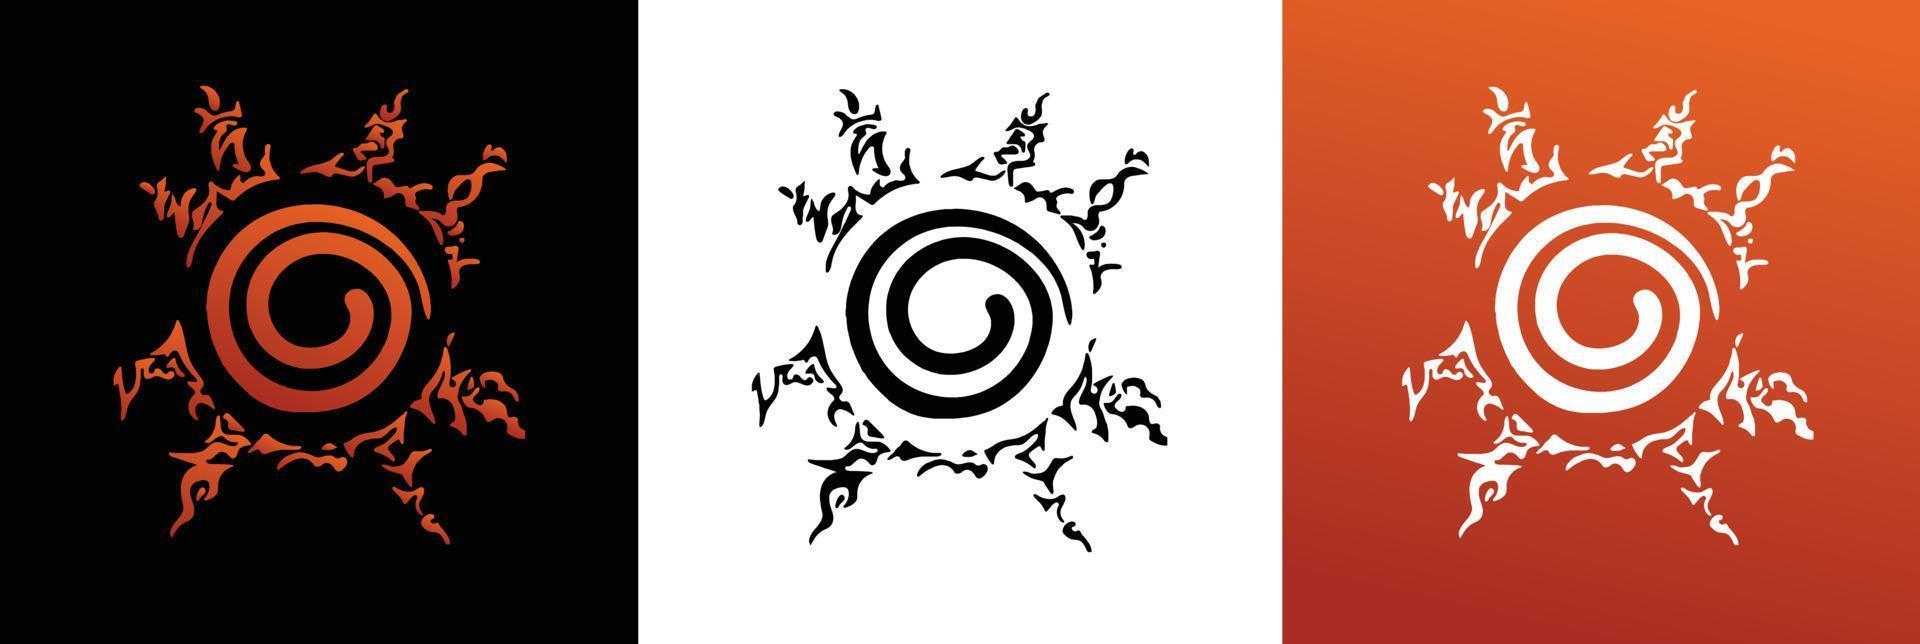 spirale malédiction marque silhouette dans Trois cadres vecteur